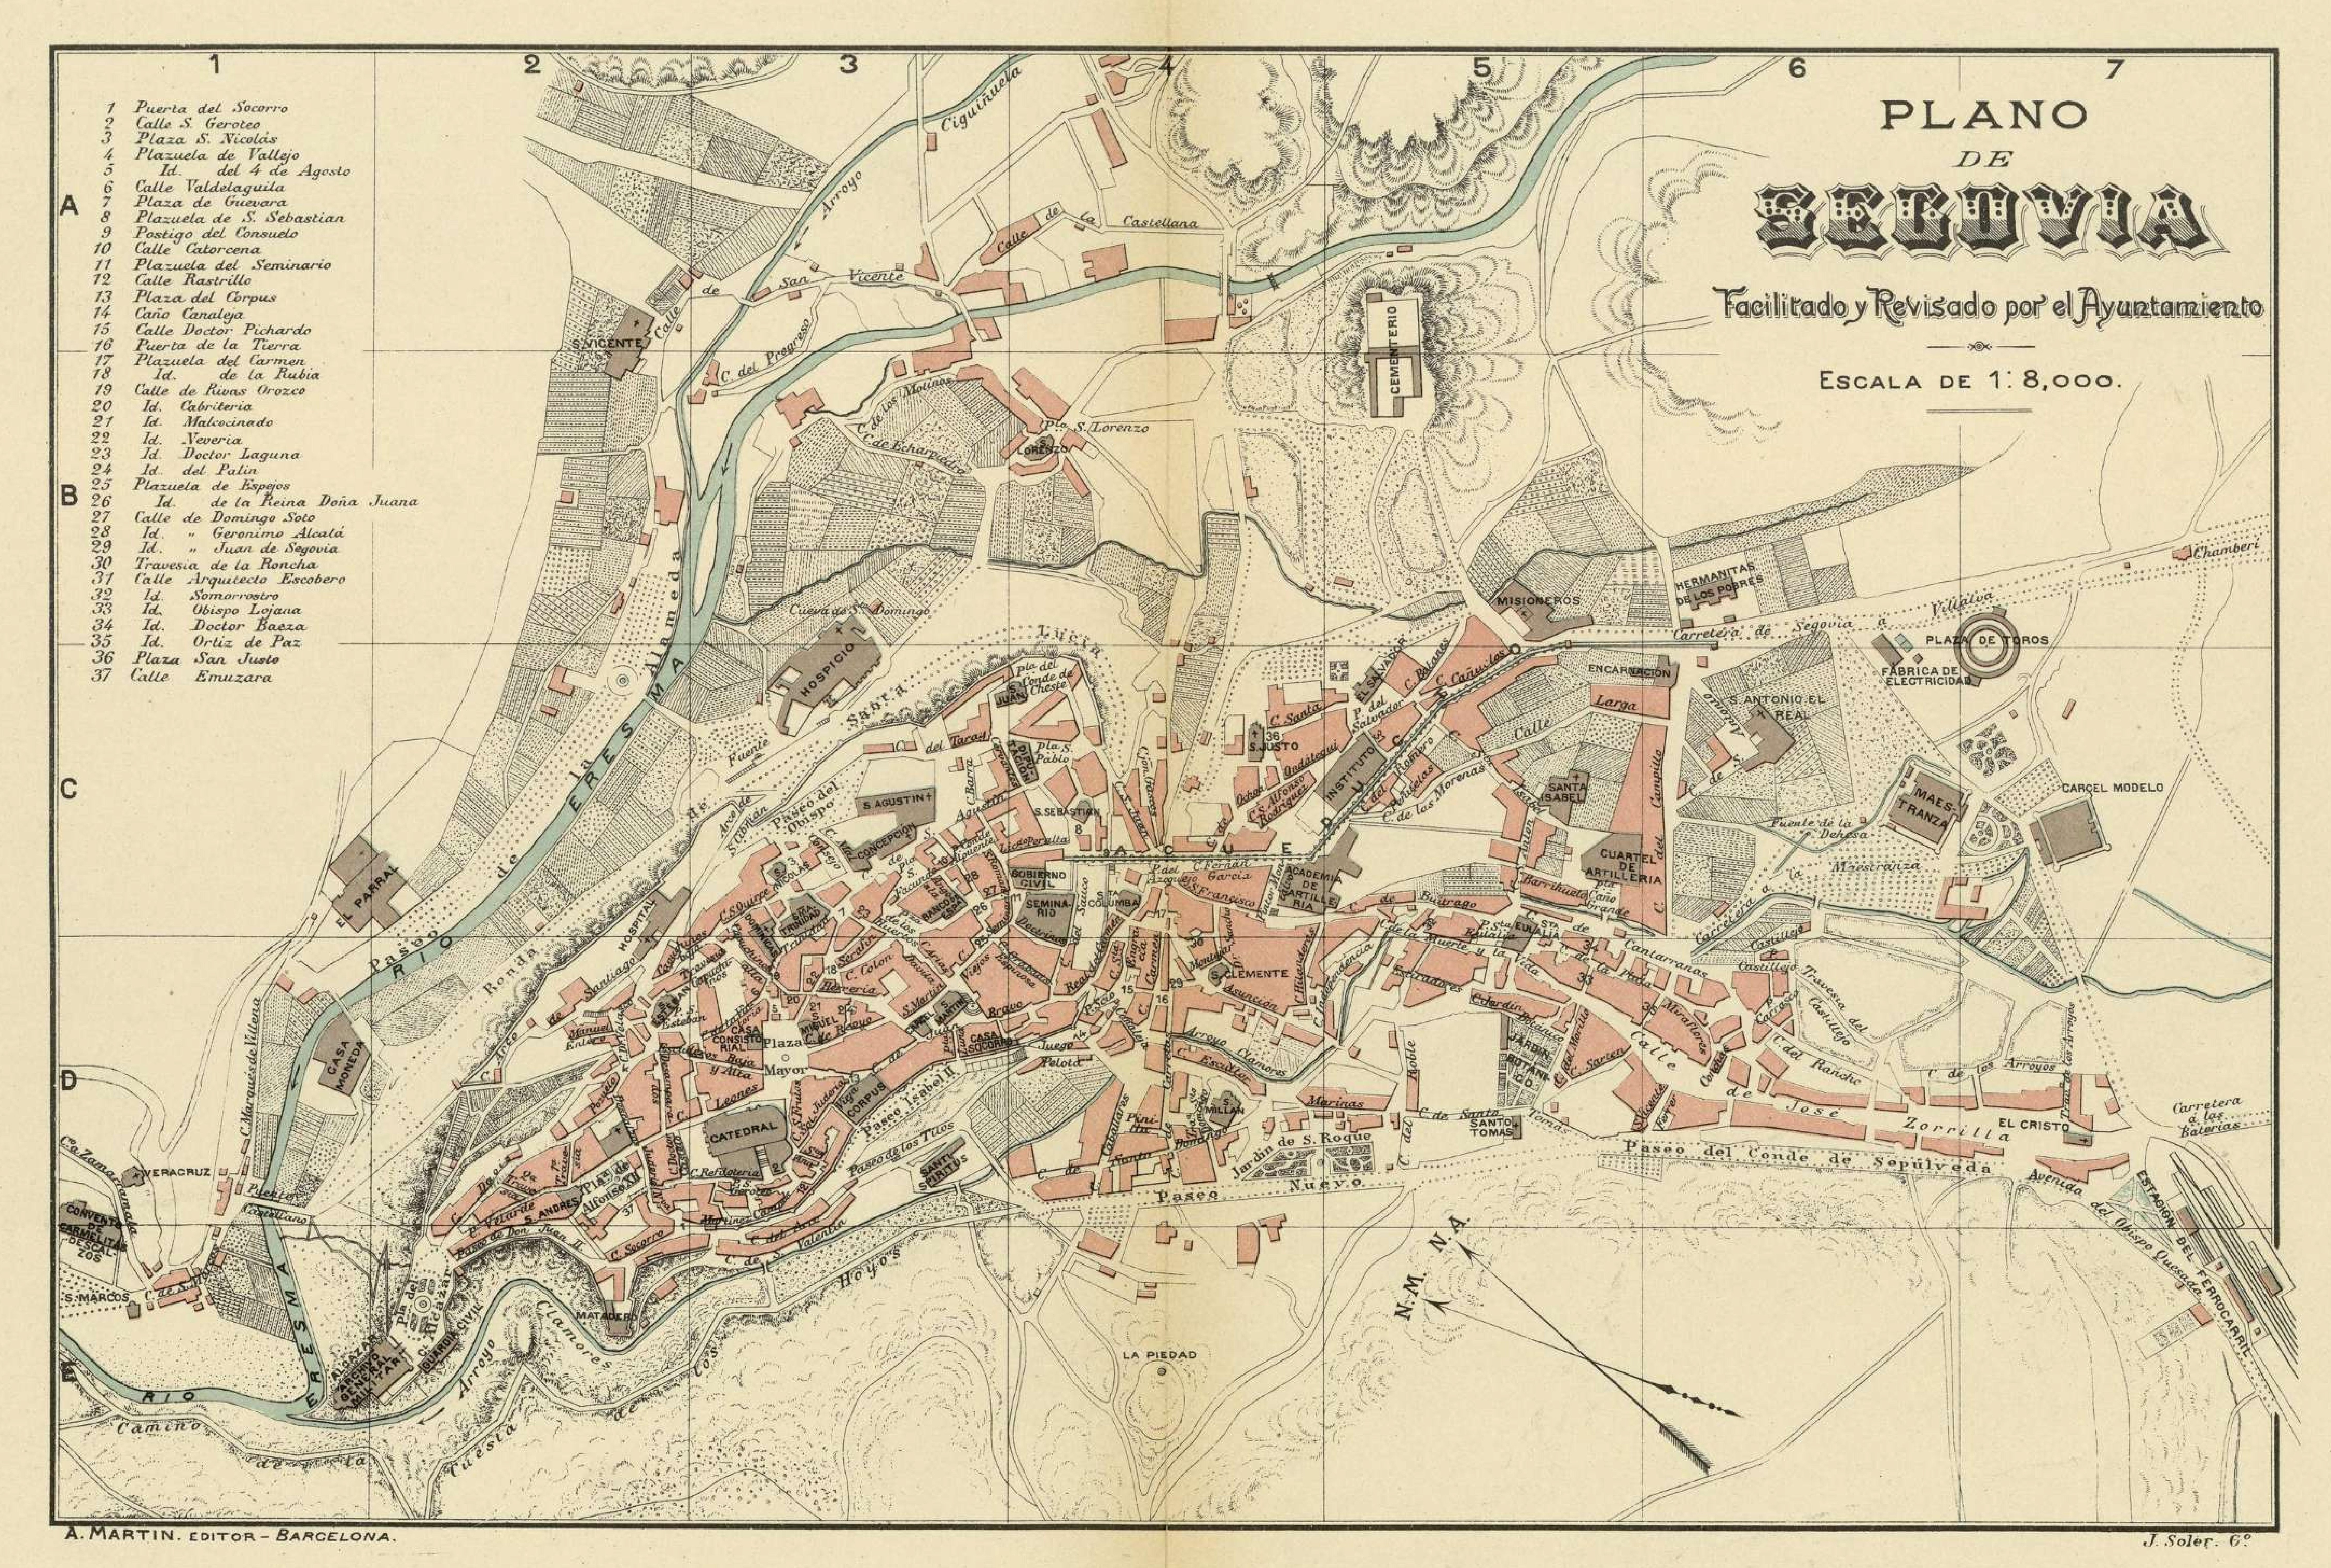 Plano de Segovia de Alberto Martín (1910)